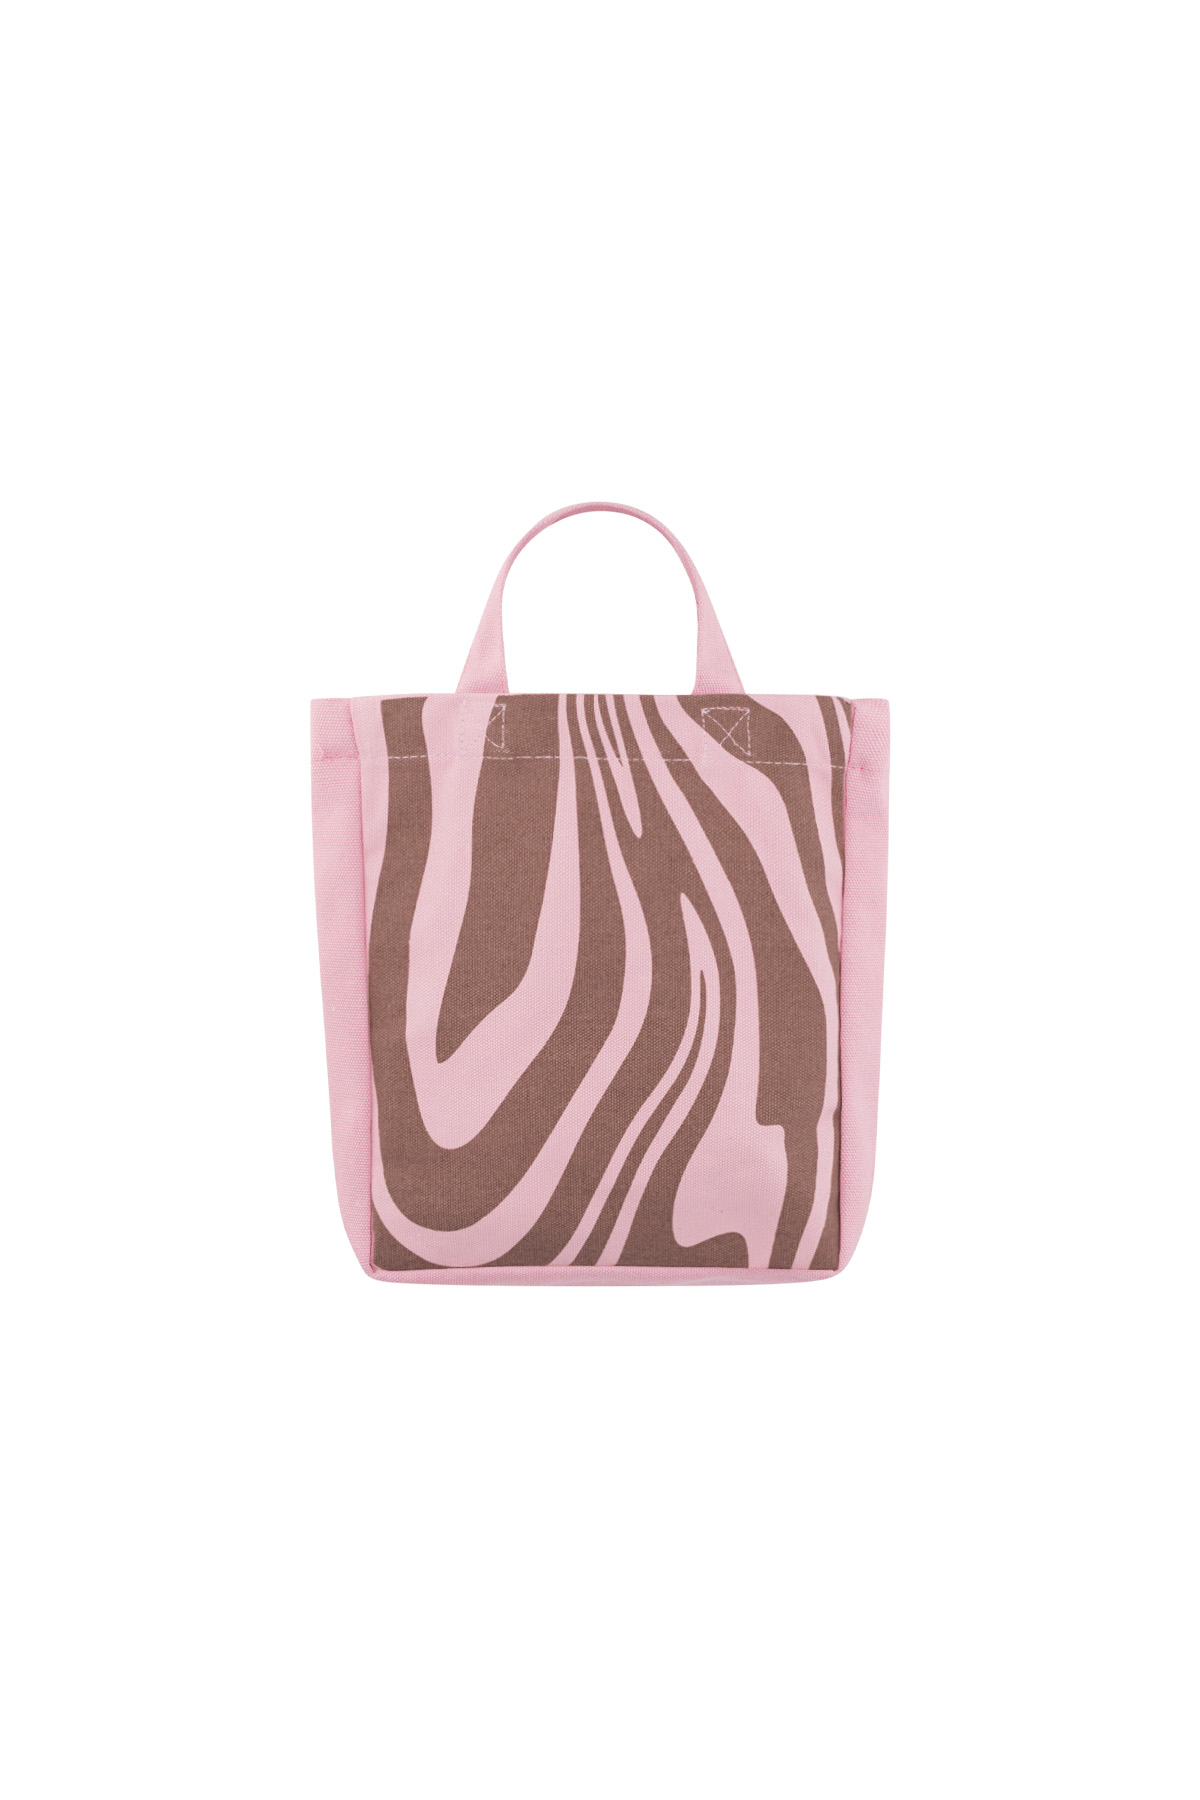 Küçük kanvas çanta zebra - pembe kahverengi h5 